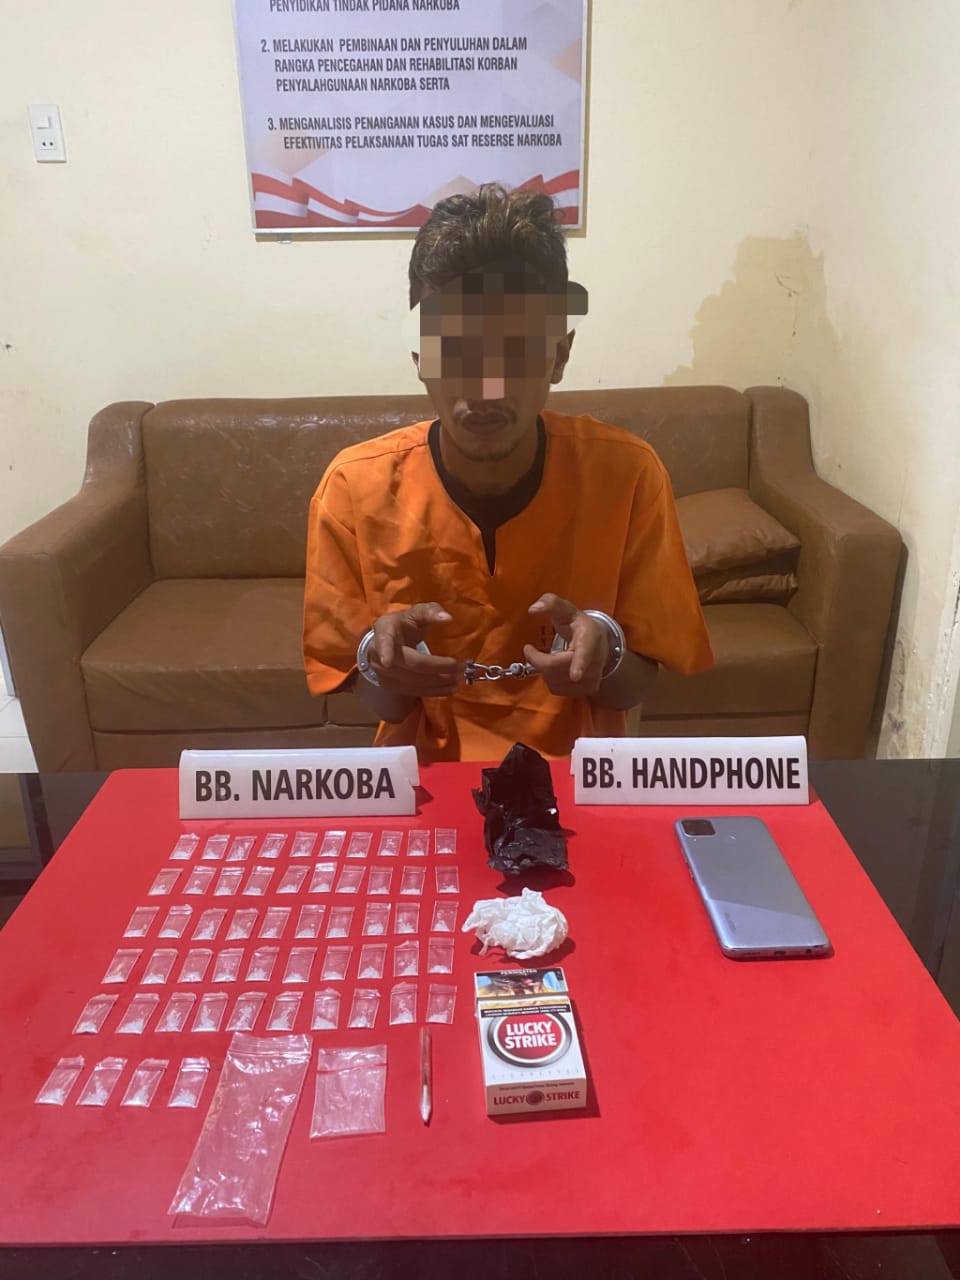 Kantongi Narkoba 7,50 Gram, Pemuda 26 Tahun Dikampar ini Ditangkap Polisi